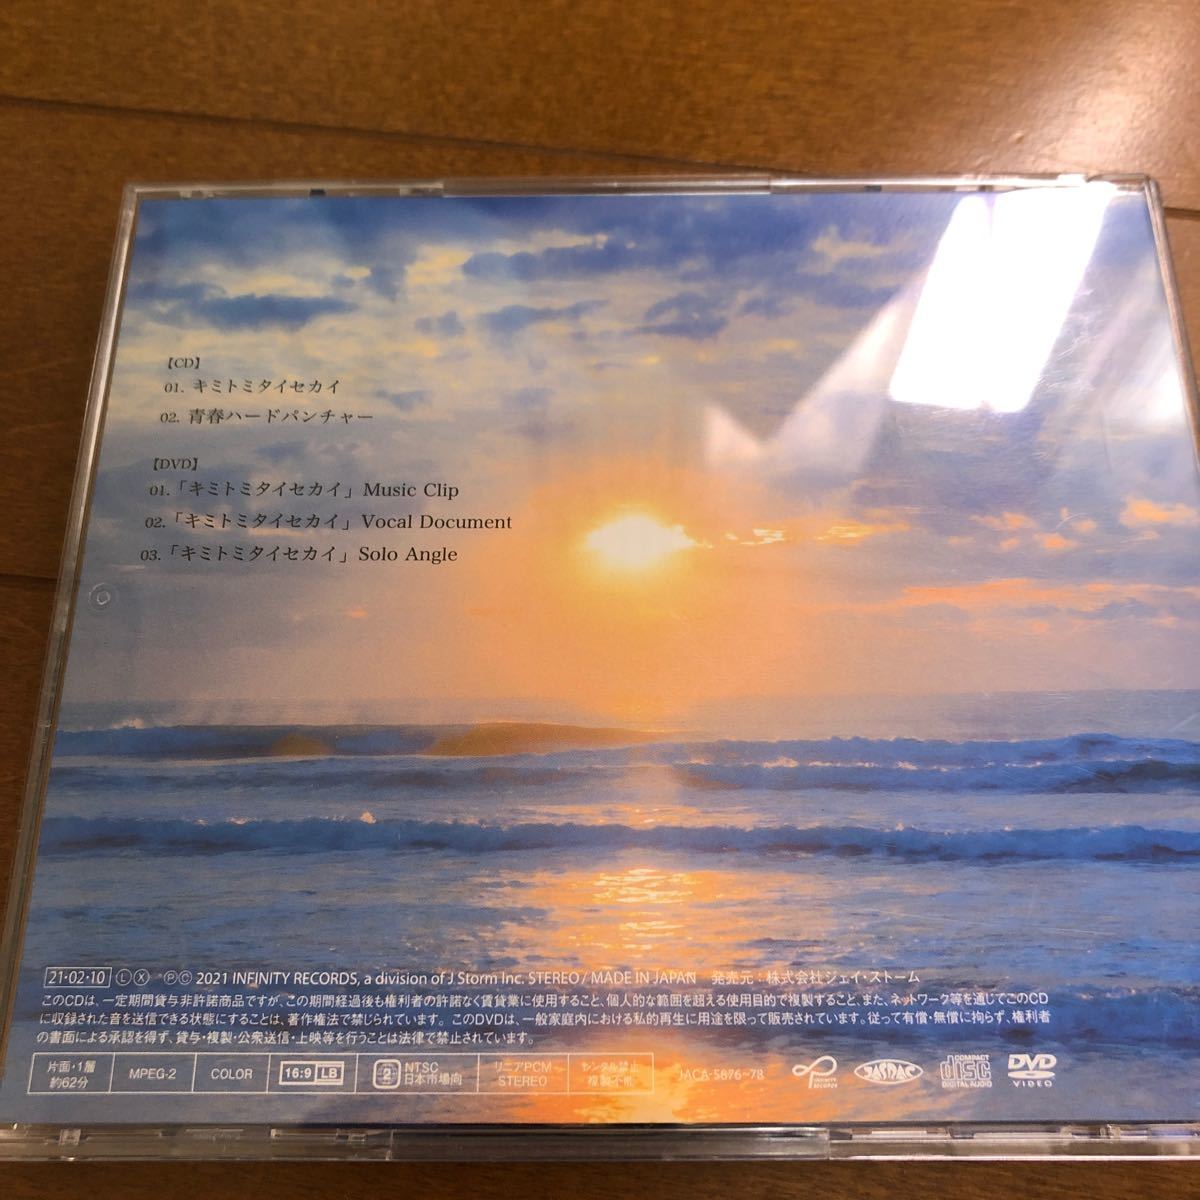 初回限定盤A オーロラリフレクションジャケット仕様 (モーニングオーロラ ver.) 関ジャニ∞ CD+DVD